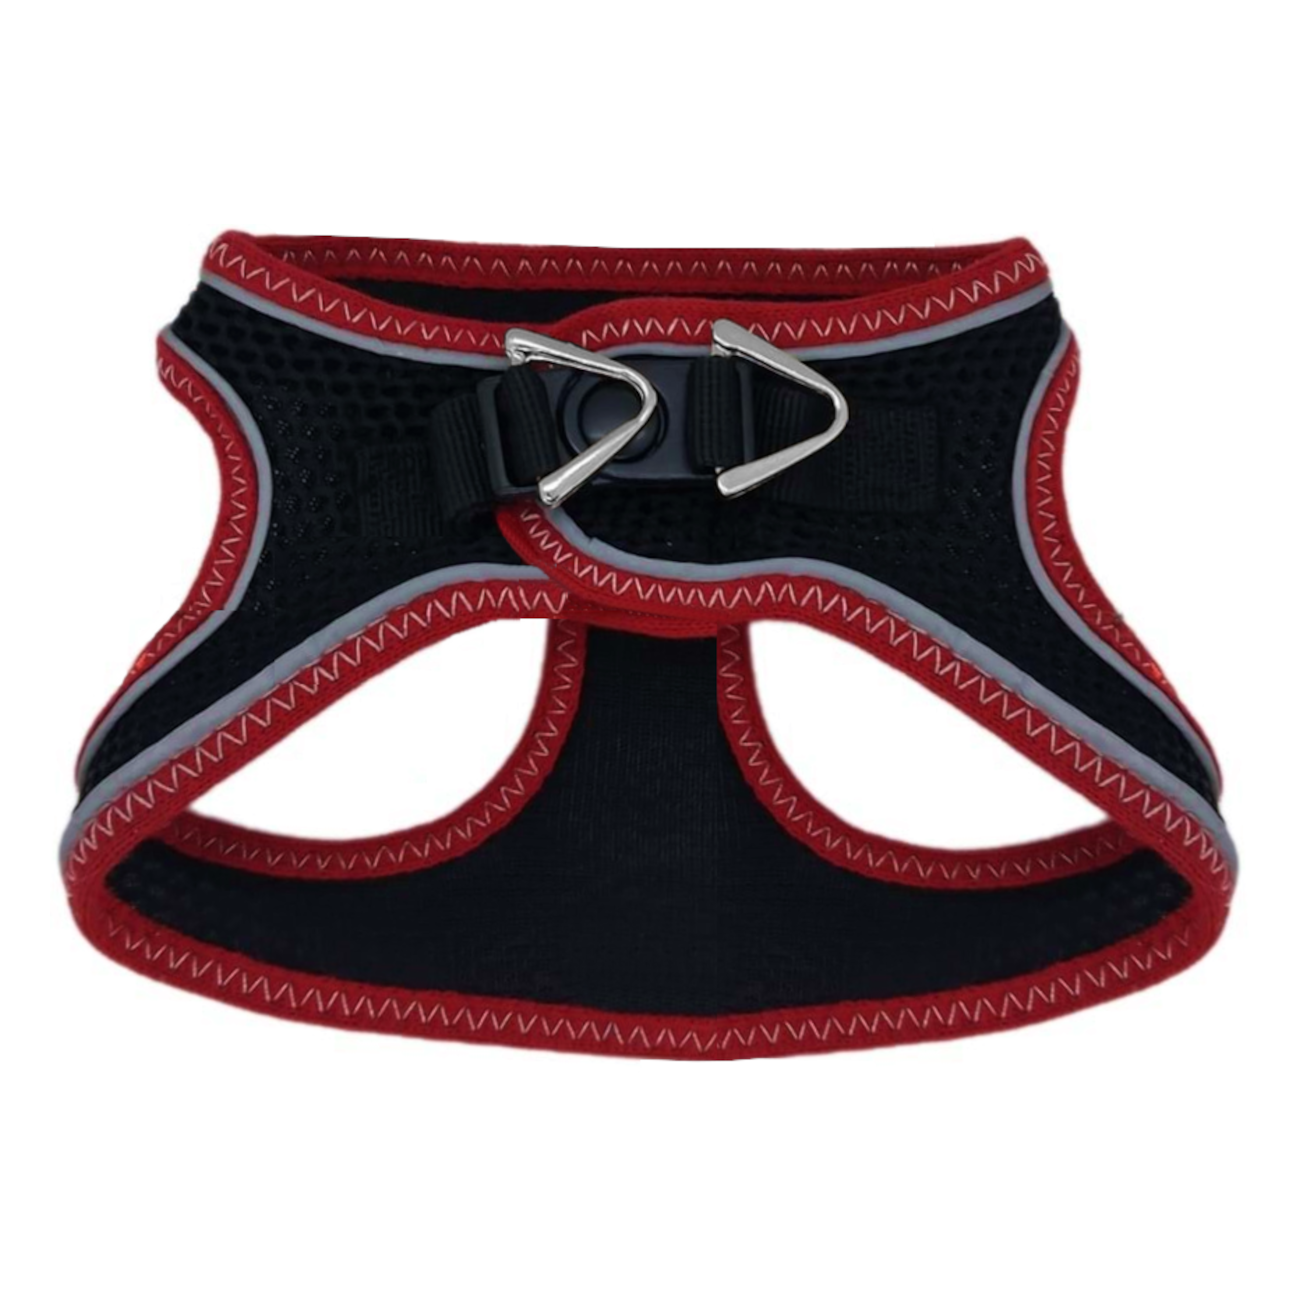 CLZ205 Üç Kilitli Sportif Kedi Köpek Göğüs Tasması 30-38 cm Small Kırmızı-Siyah